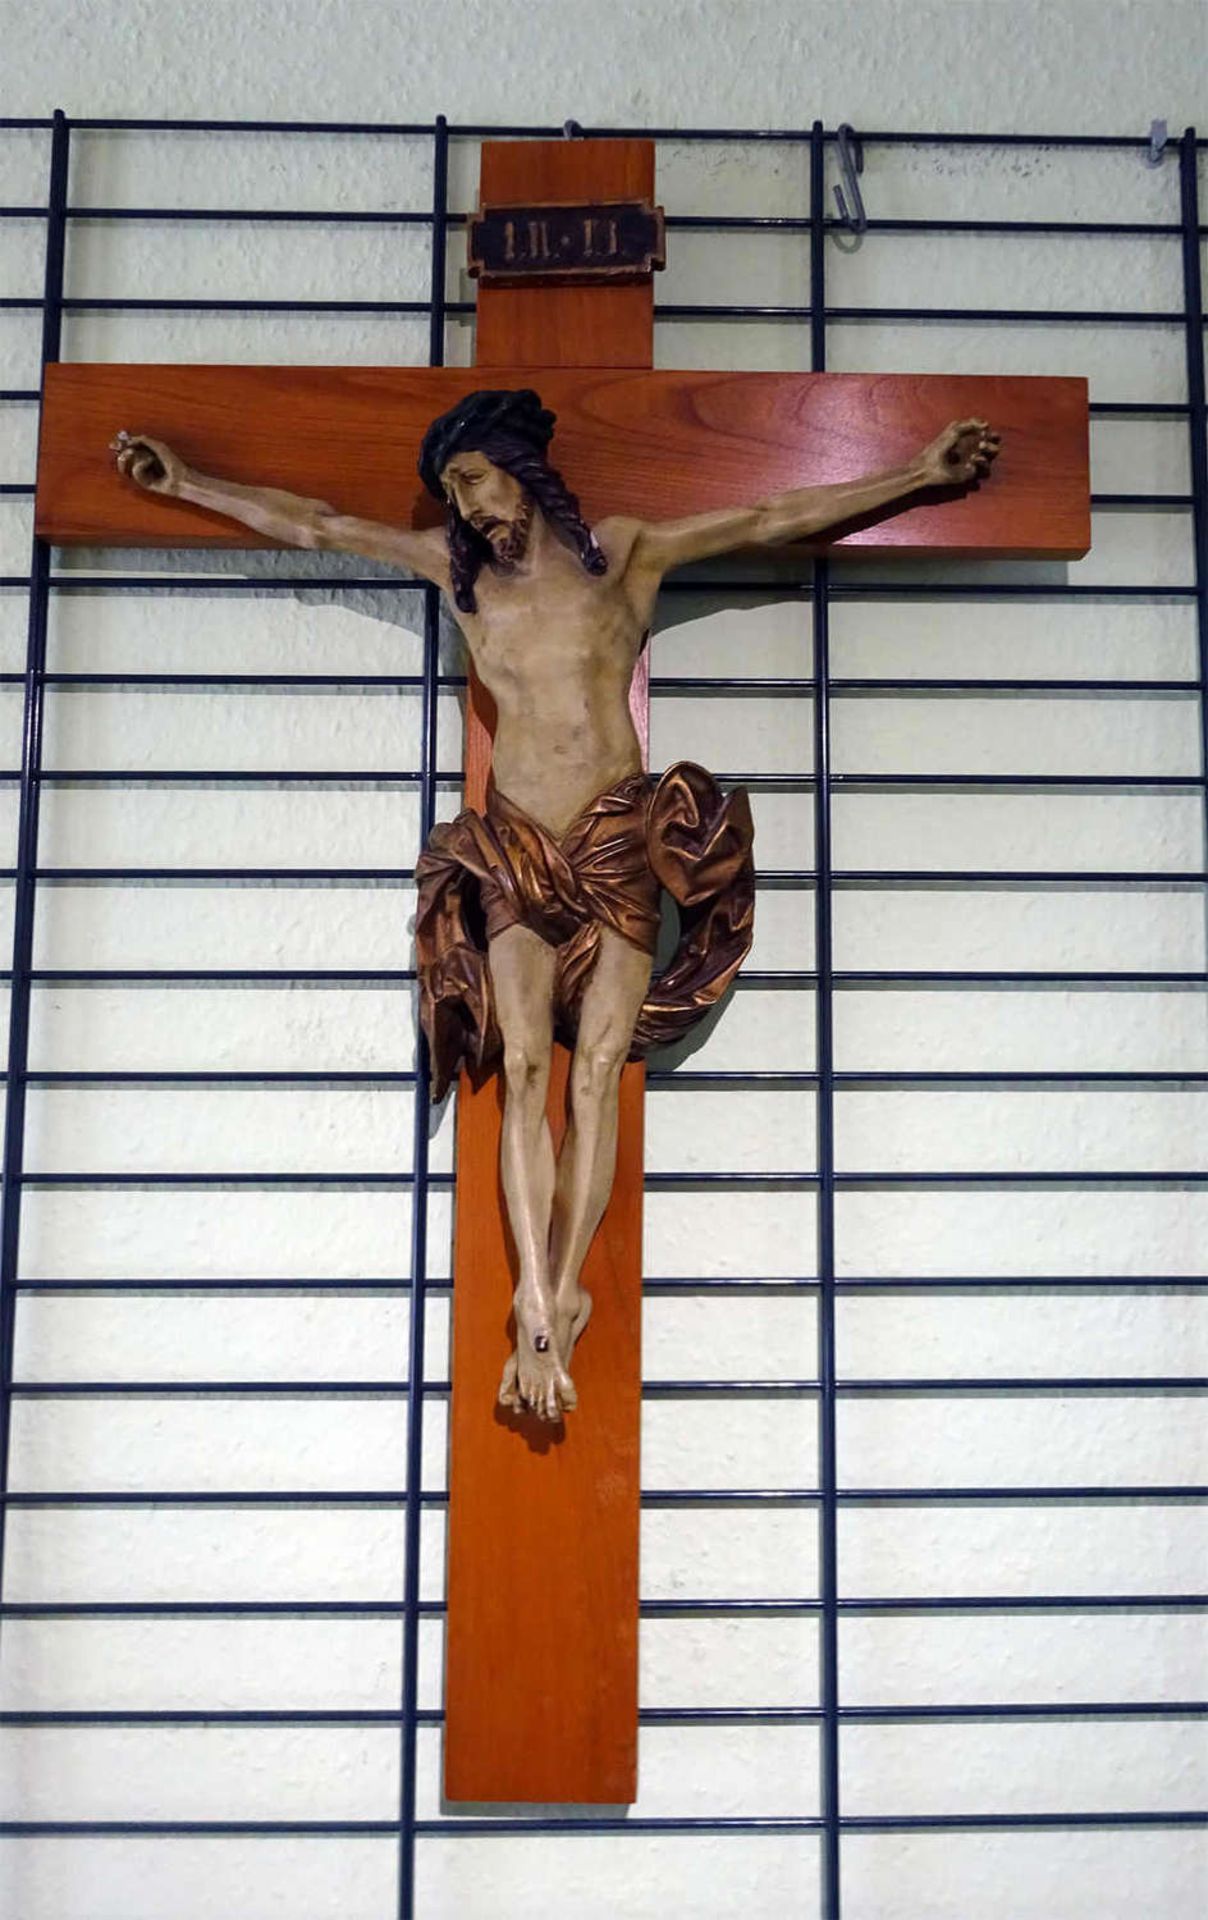 Kruzifix mit Jesus aus Gips, farbig gestaltet. Höhe ca. 80 cm, Breite ca. 52 cm.Crucifix with